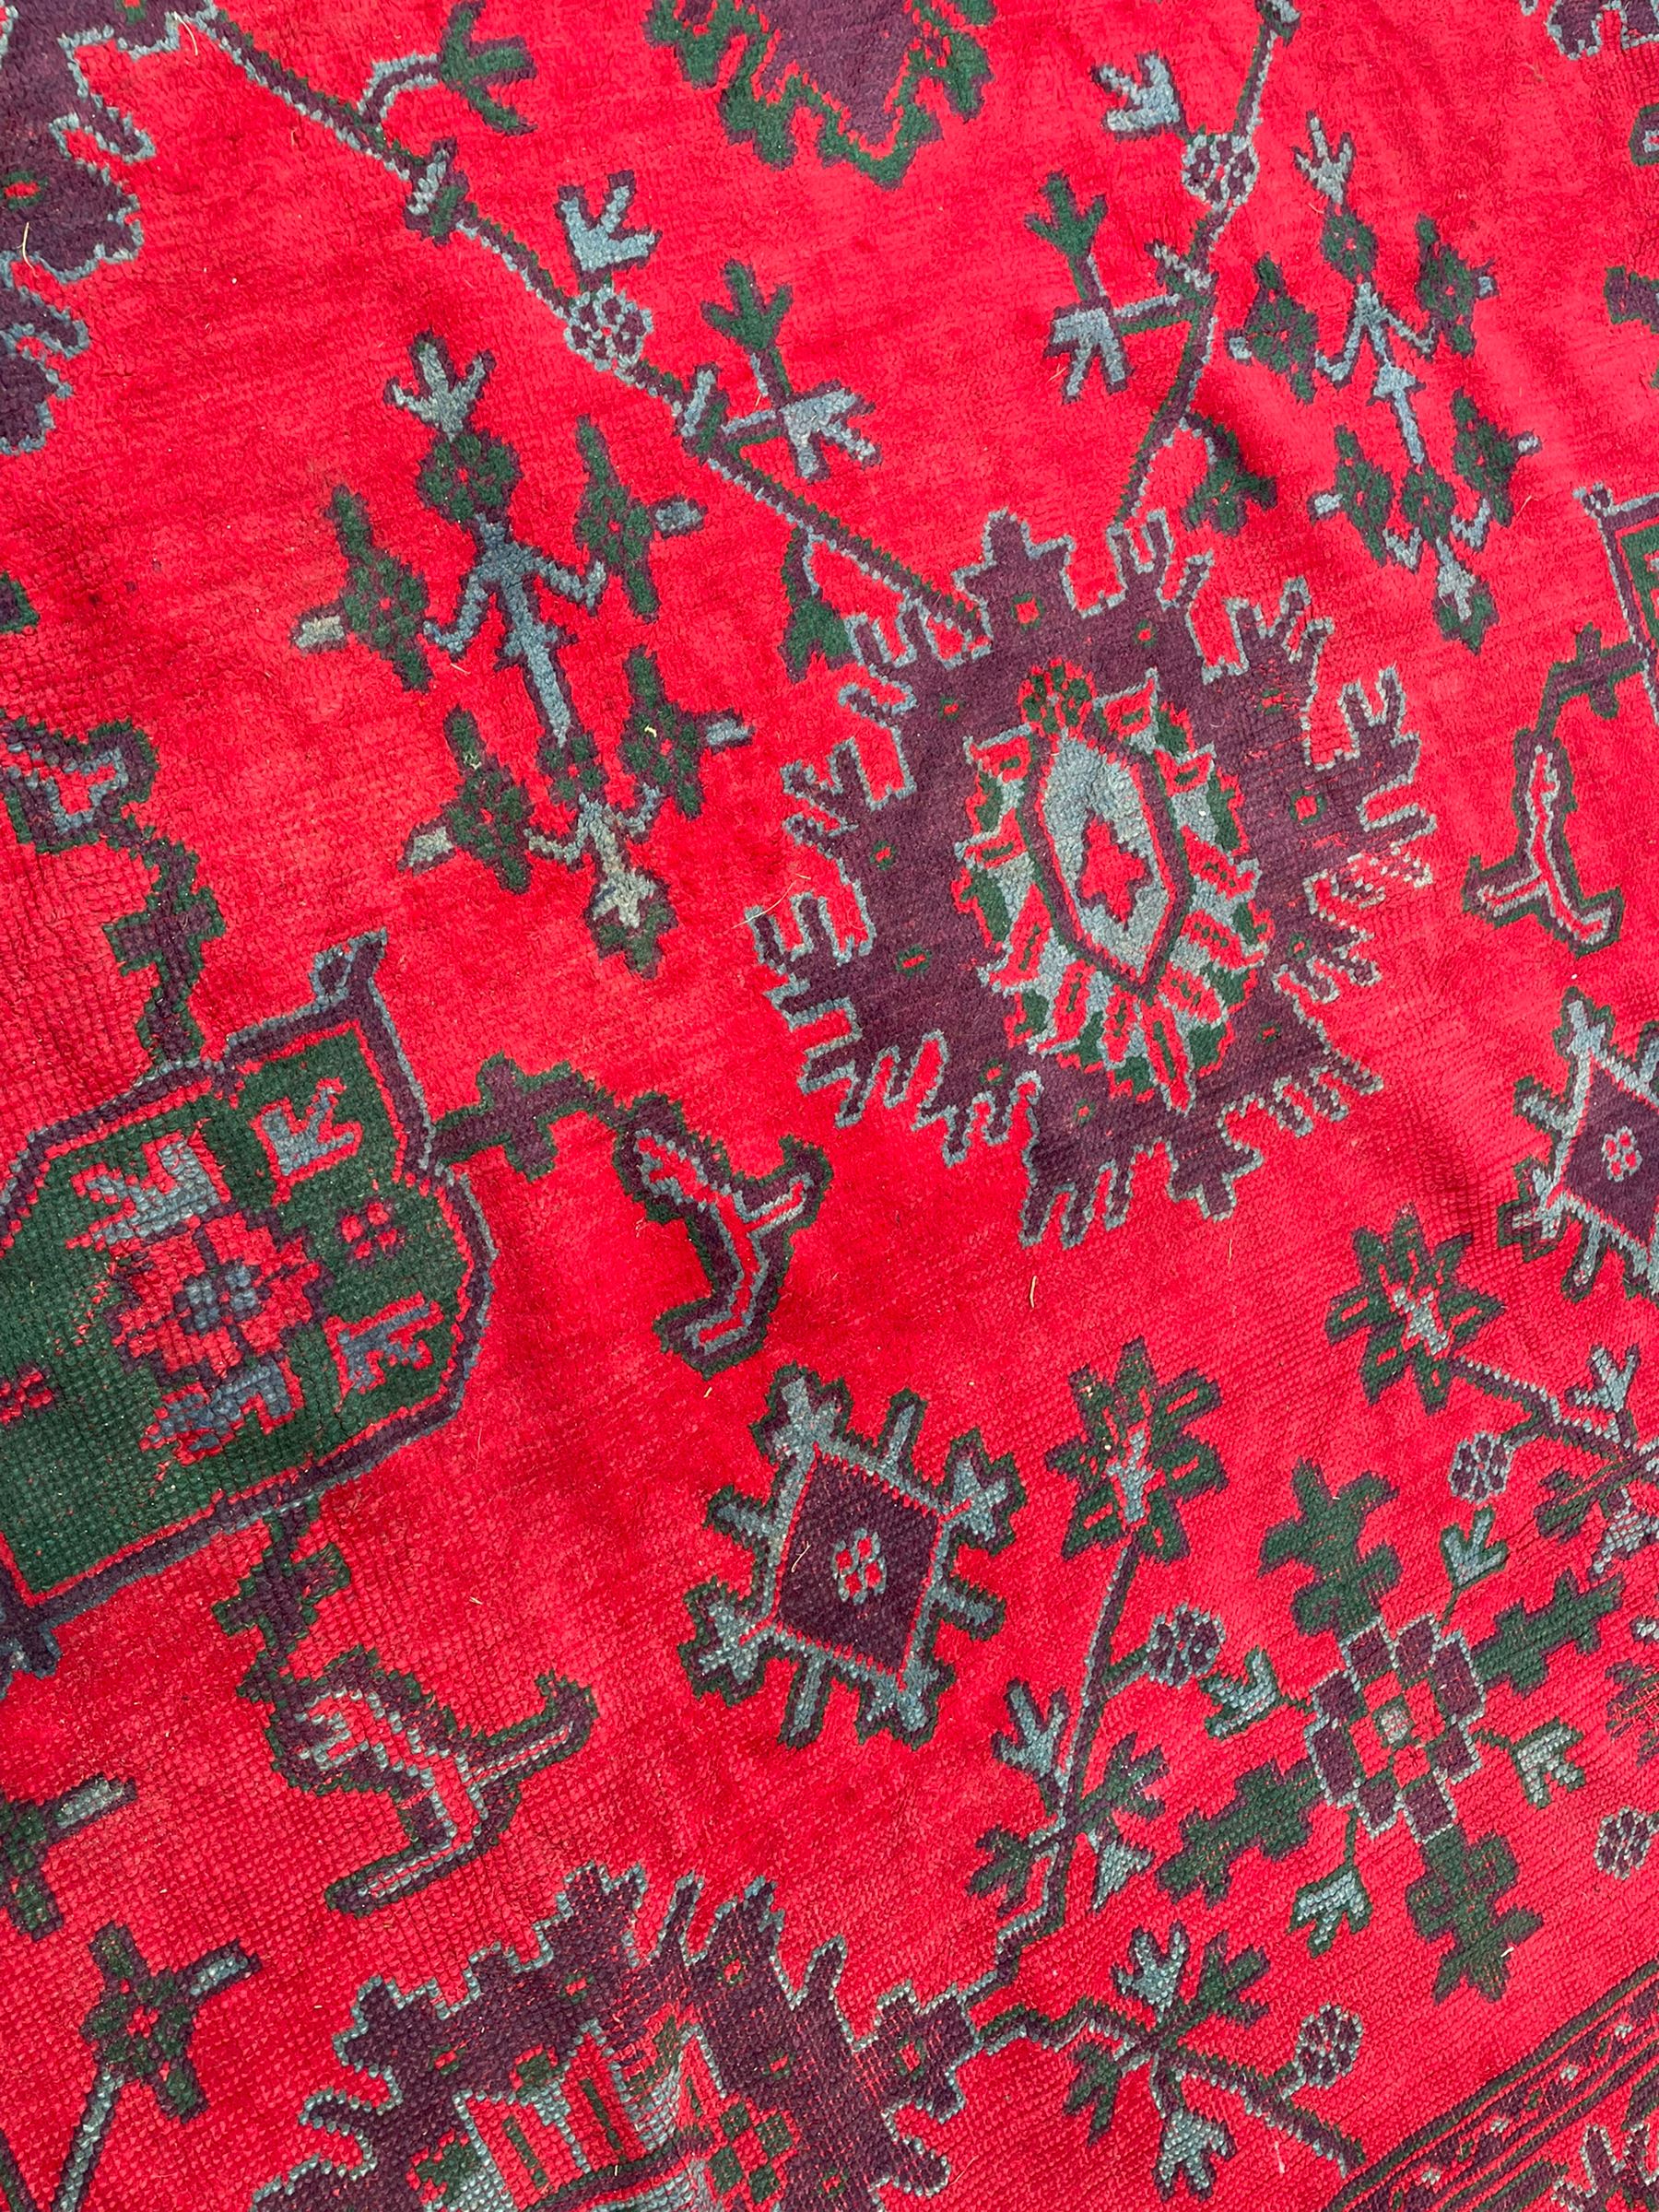 Early 20th century Western Anatolia Turkish Oushak crimson ground carpet - Image 6 of 10